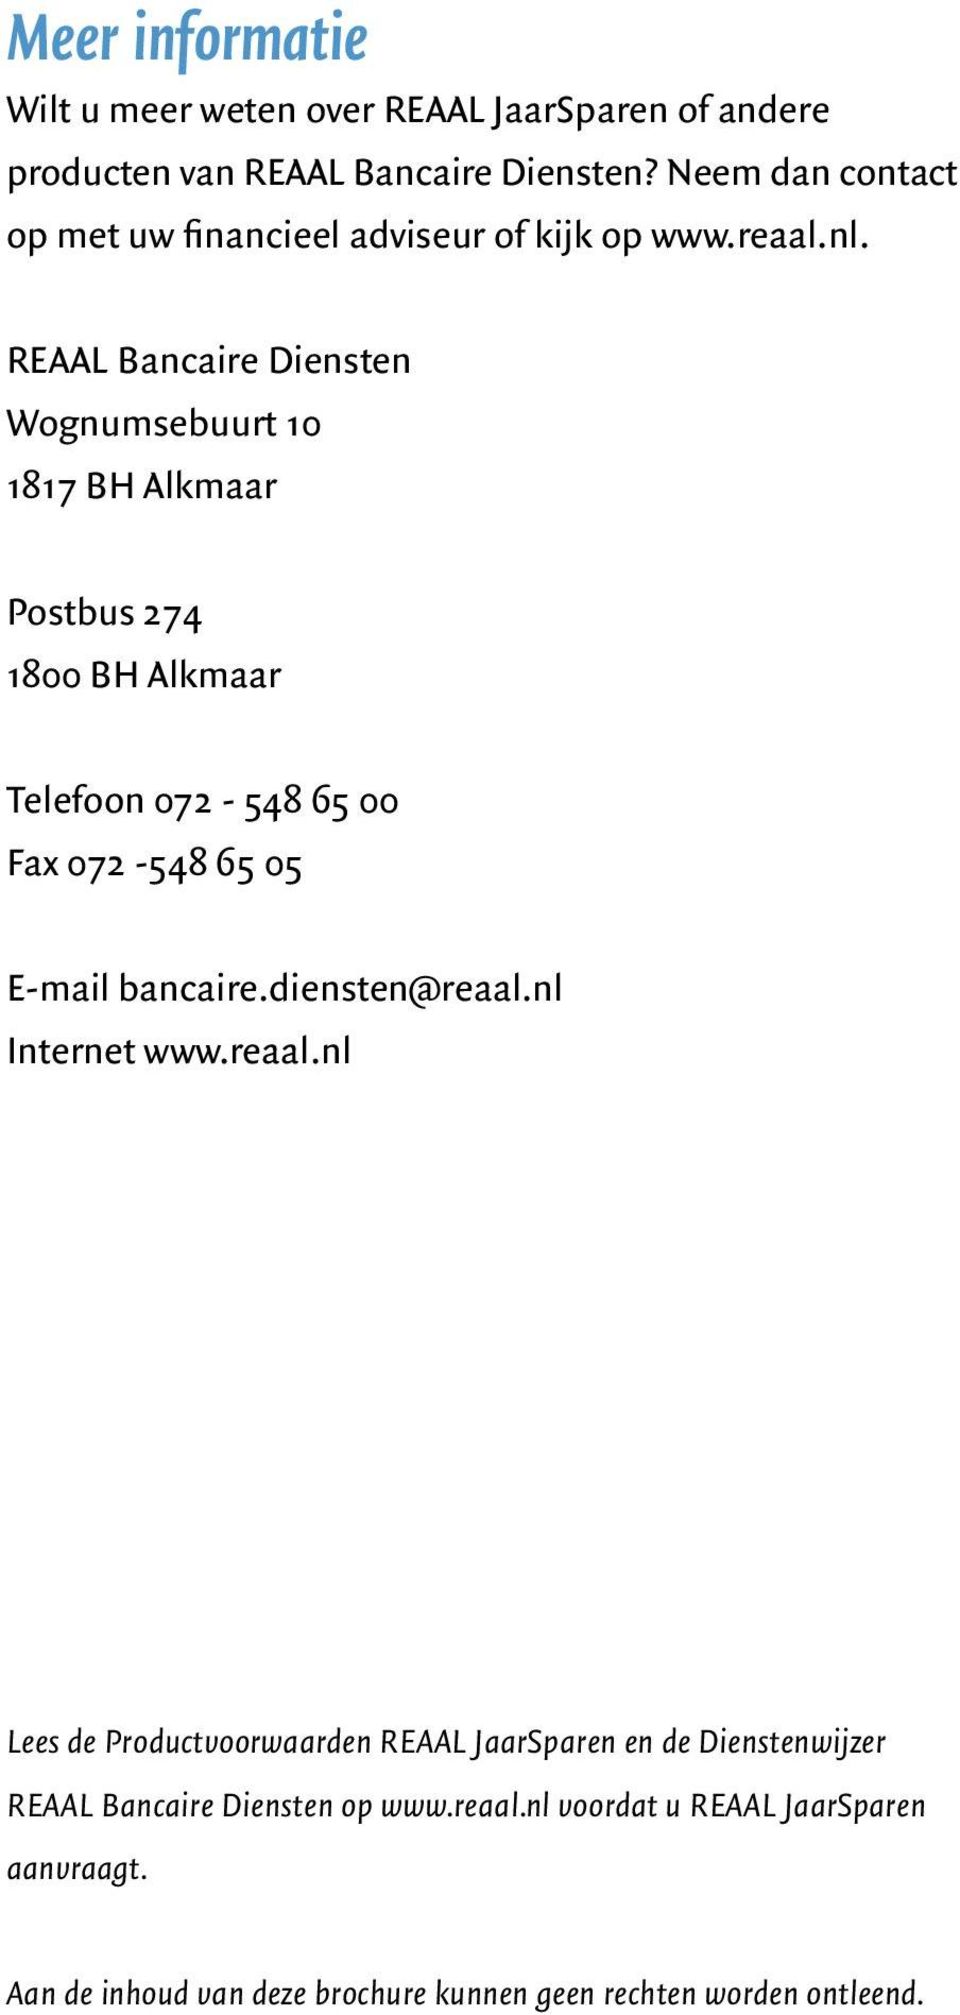 REAAL Bancaire Diensten Wognumsebuurt 10 1817 BH Alkmaar Postbus 274 1800 BH Alkmaar Telefoon 072-548 65 00 Fax 072-548 65 05 E-mail bancaire.